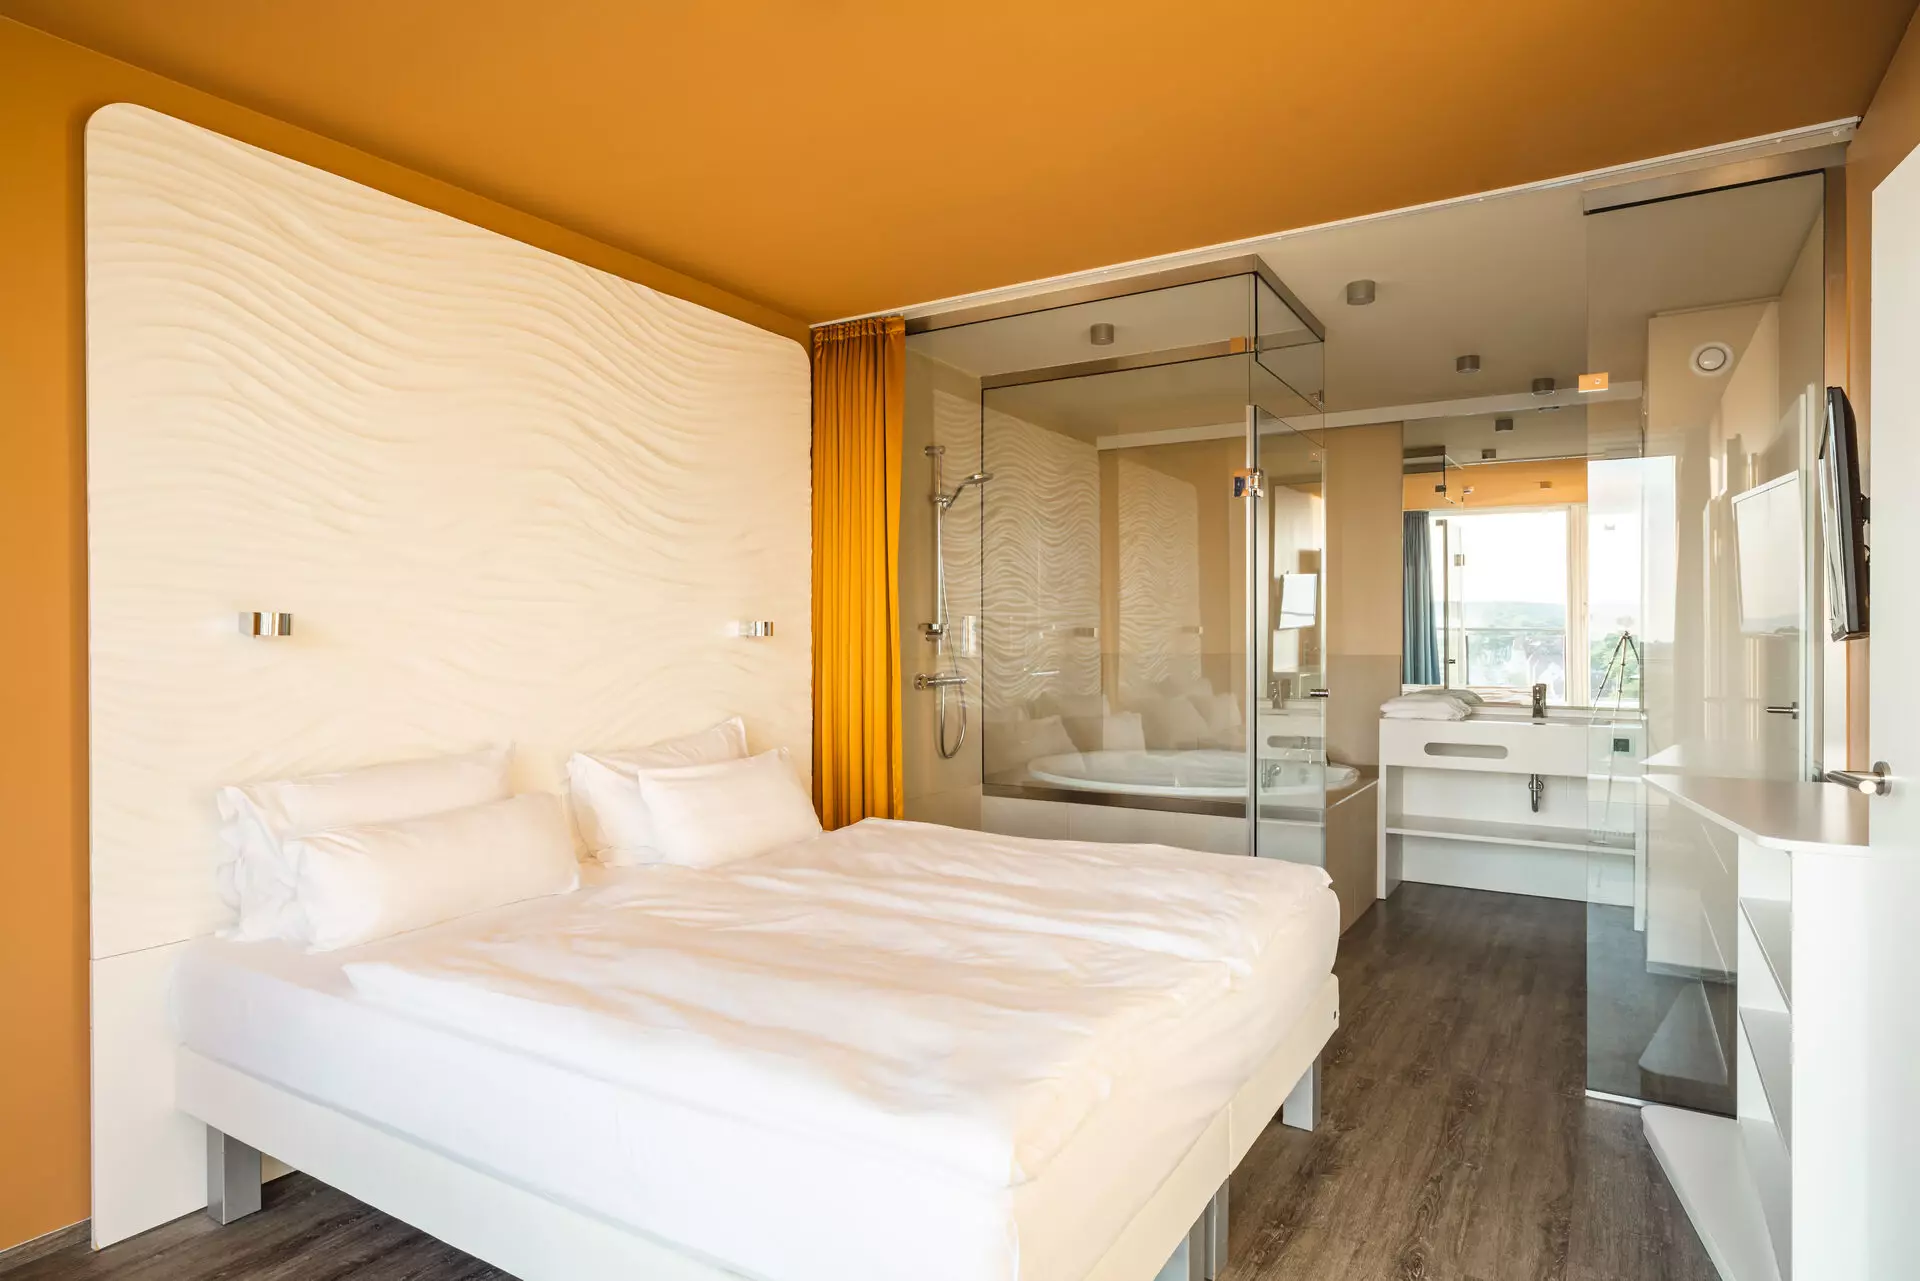 Ein mit weißer Bettwäsche bezogenes Doppelbettsteht vor einer weißen Rückwand mit Struktur. Umrahmt von einer orangenen Wand und einem orangenen Vorhang steht das Bett in einem Raum mit orangefarbener Decke und dunklem Holzboden. Im Hintergrund ist hinter einer gläsernen Trennwand ein Badezimmer zu erkennen.